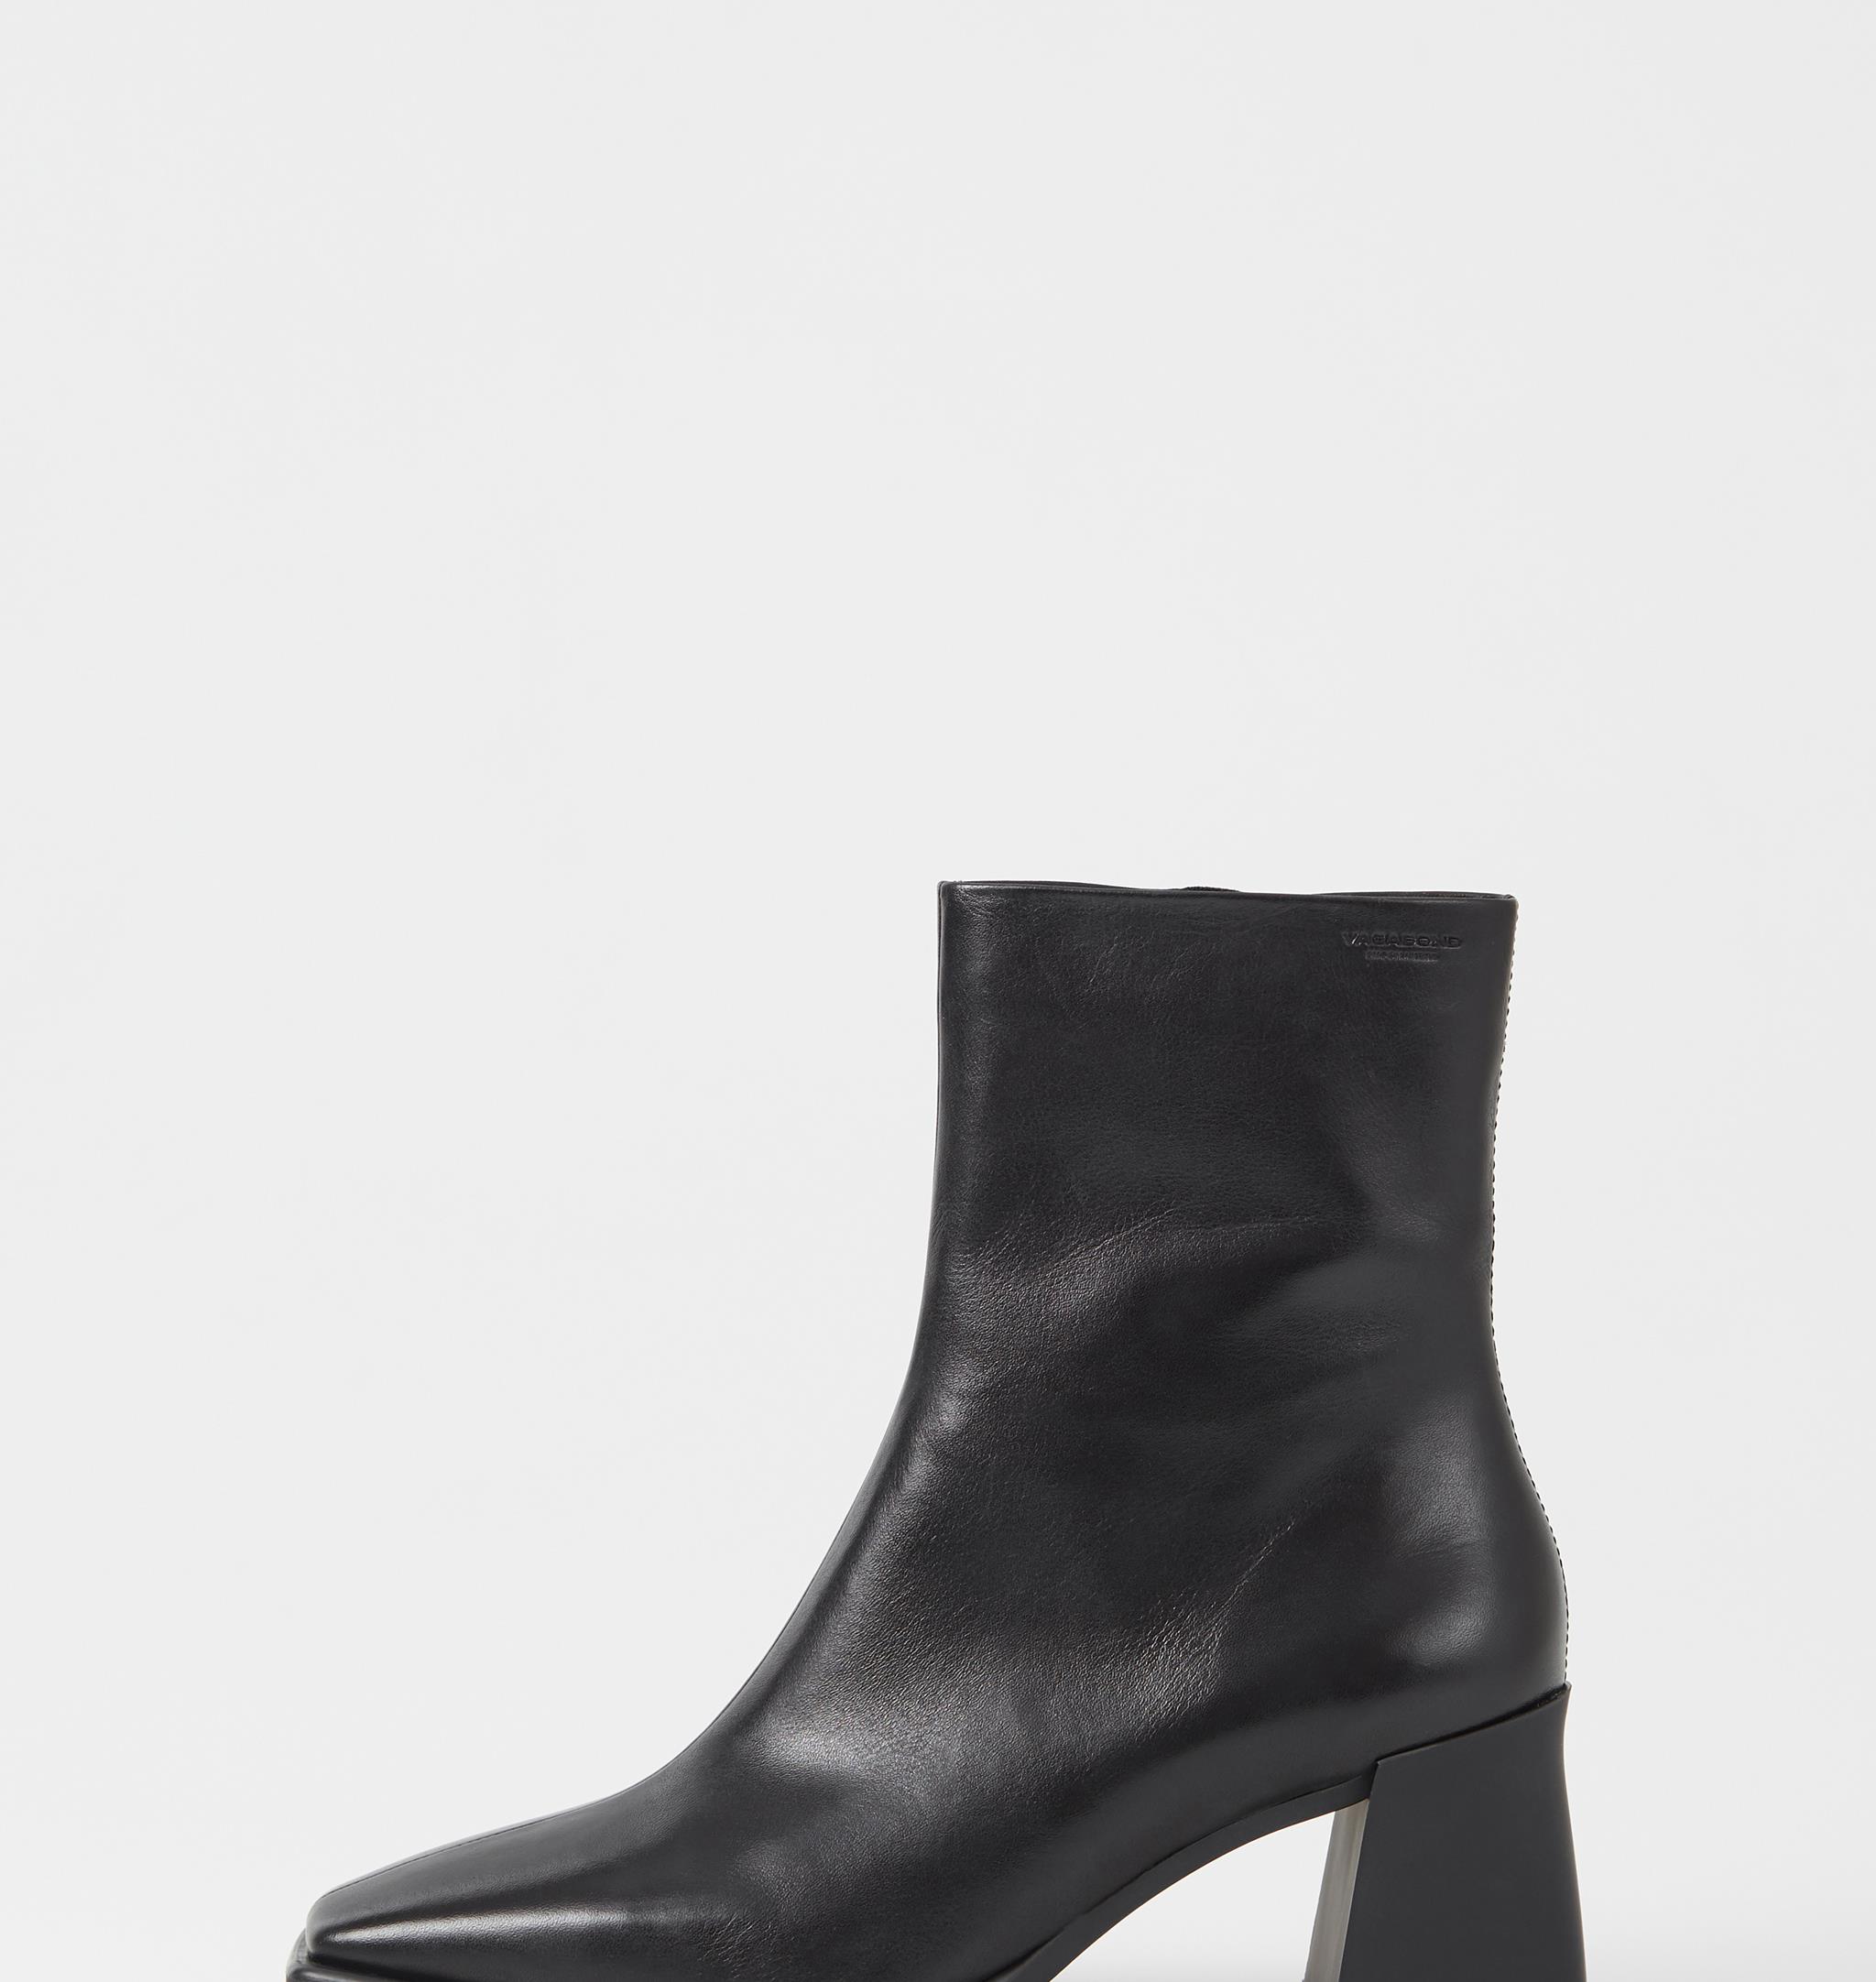 Hedda - Black Boots | Vagabond